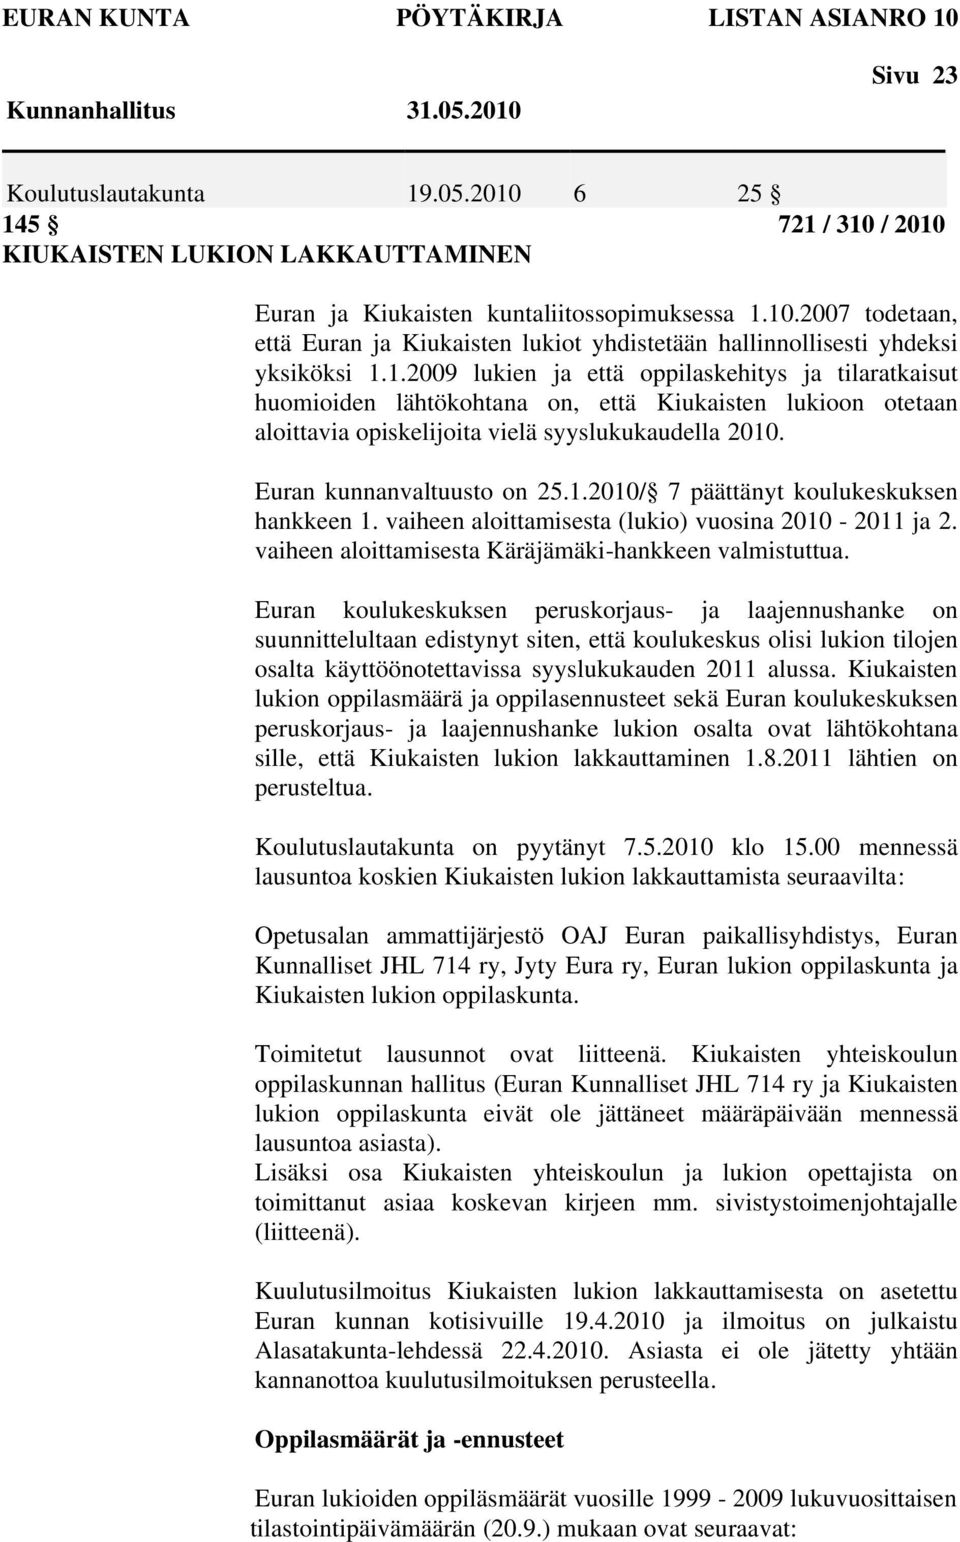 Euran kunnanvaltuusto on 25.1.2010/ 7 päättänyt koulukeskuksen hankkeen 1. vaiheen aloittamisesta (lukio) vuosina 2010-2011 ja 2. vaiheen aloittamisesta Käräjämäki-hankkeen valmistuttua.